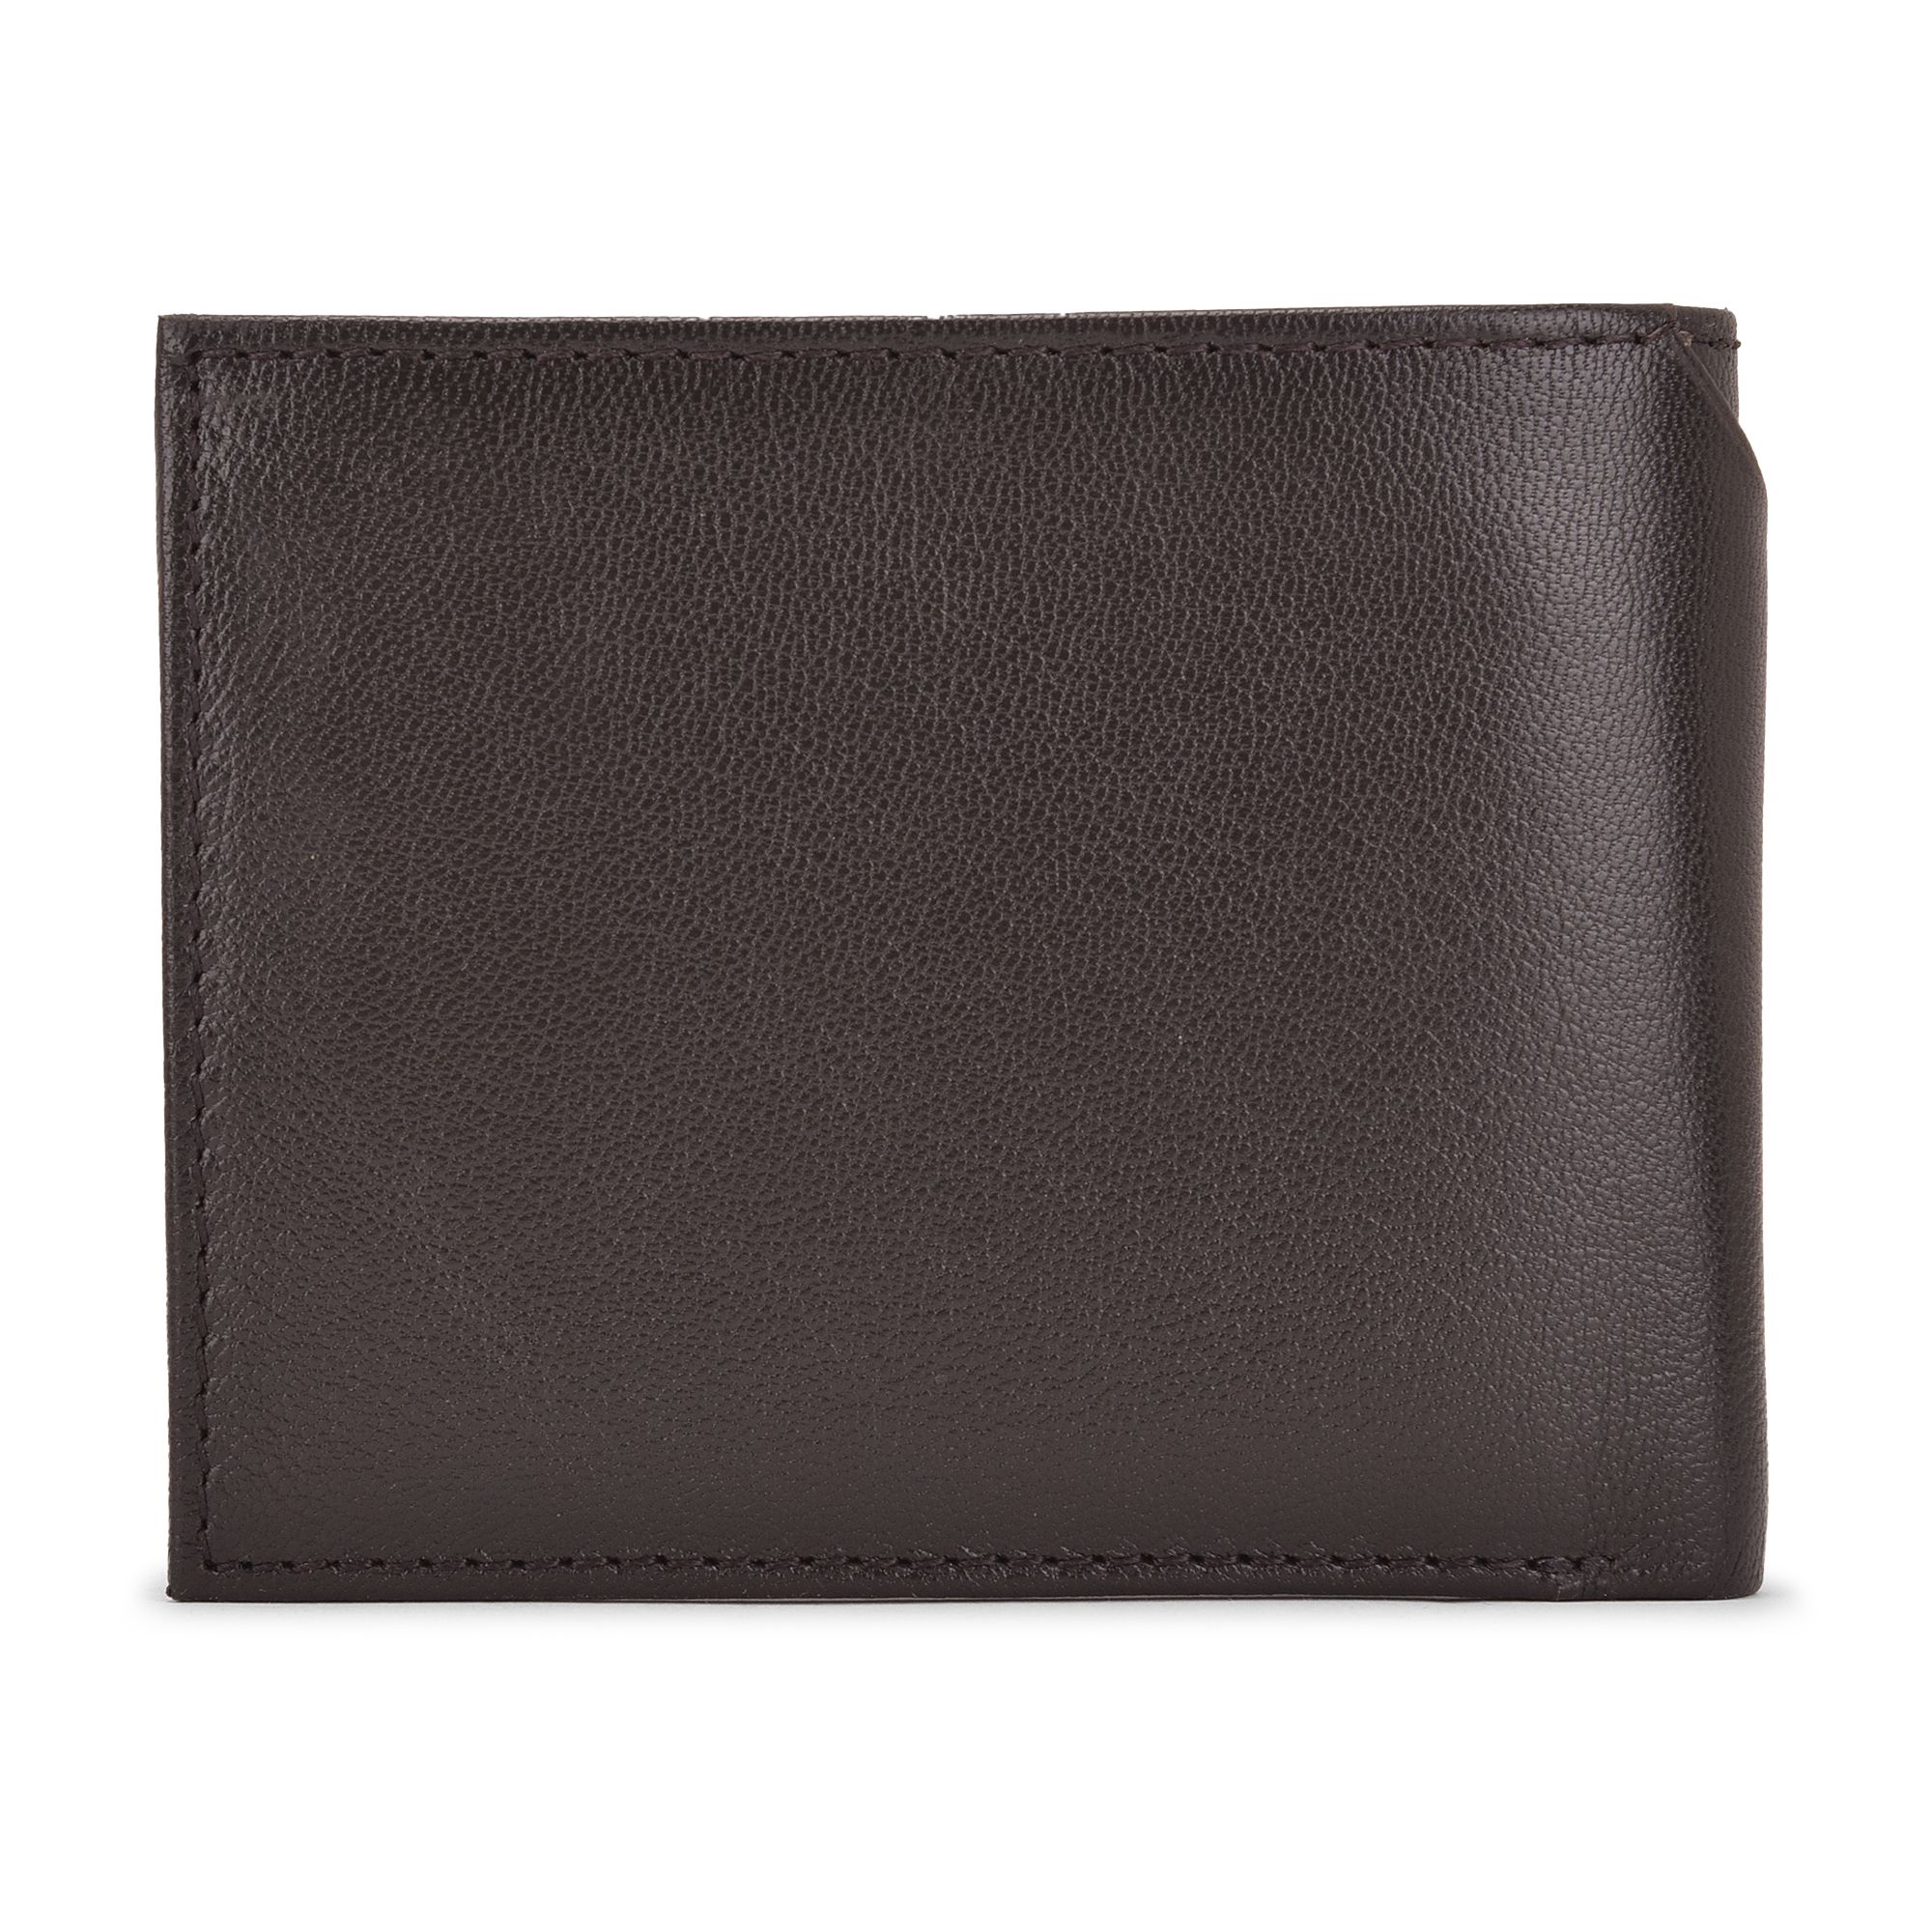 Brown/ tan bi-fold wallet